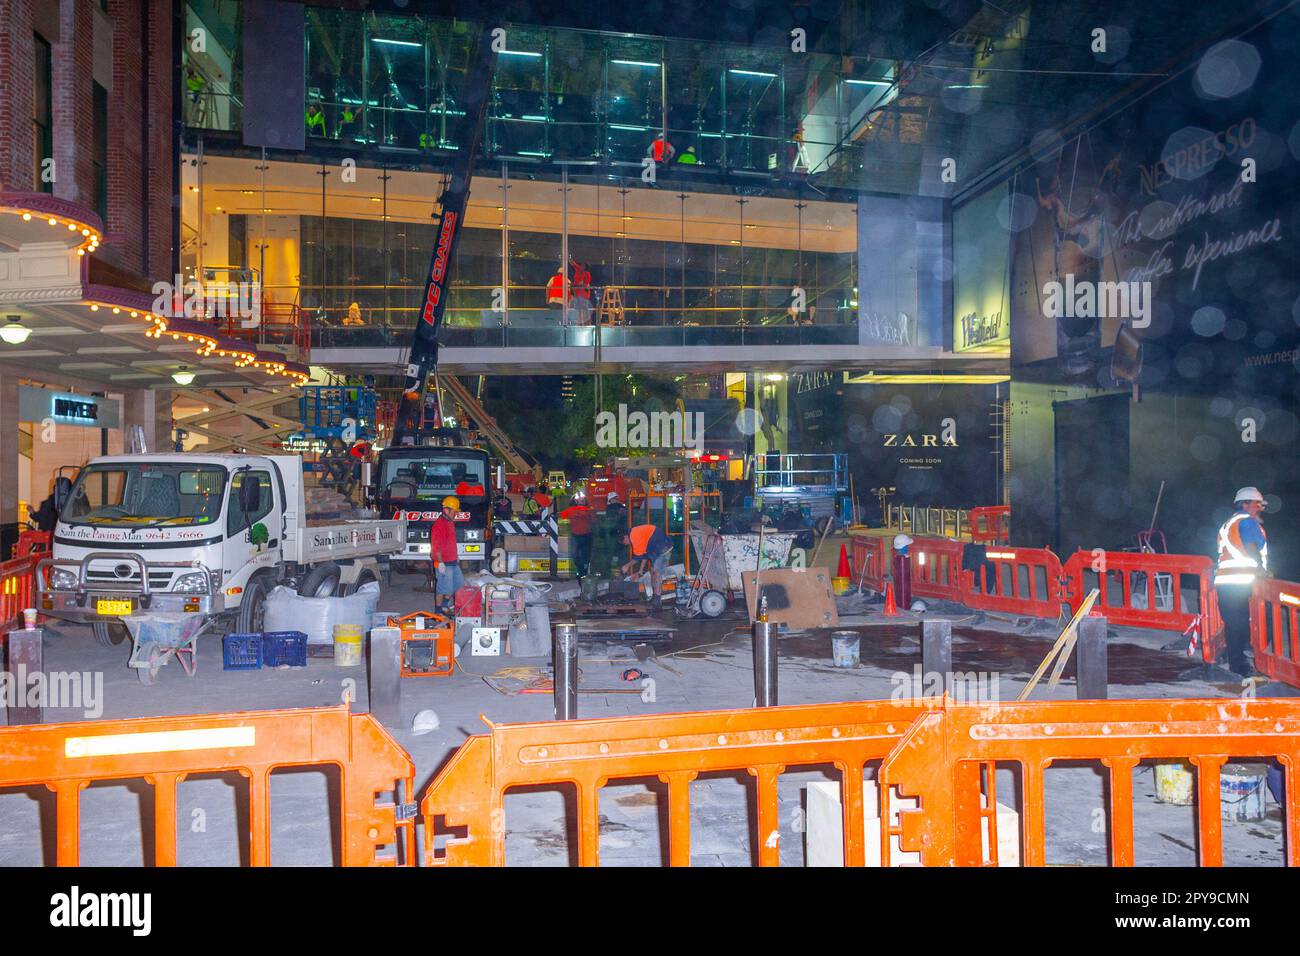 27 ottobre 20120: Costruzione e ristrutturazione del centro commerciale Westfield di Sydney, Australia, prima del suo rilancio con marchi di alta classe e nuovi negozi di punta. Foto Stock